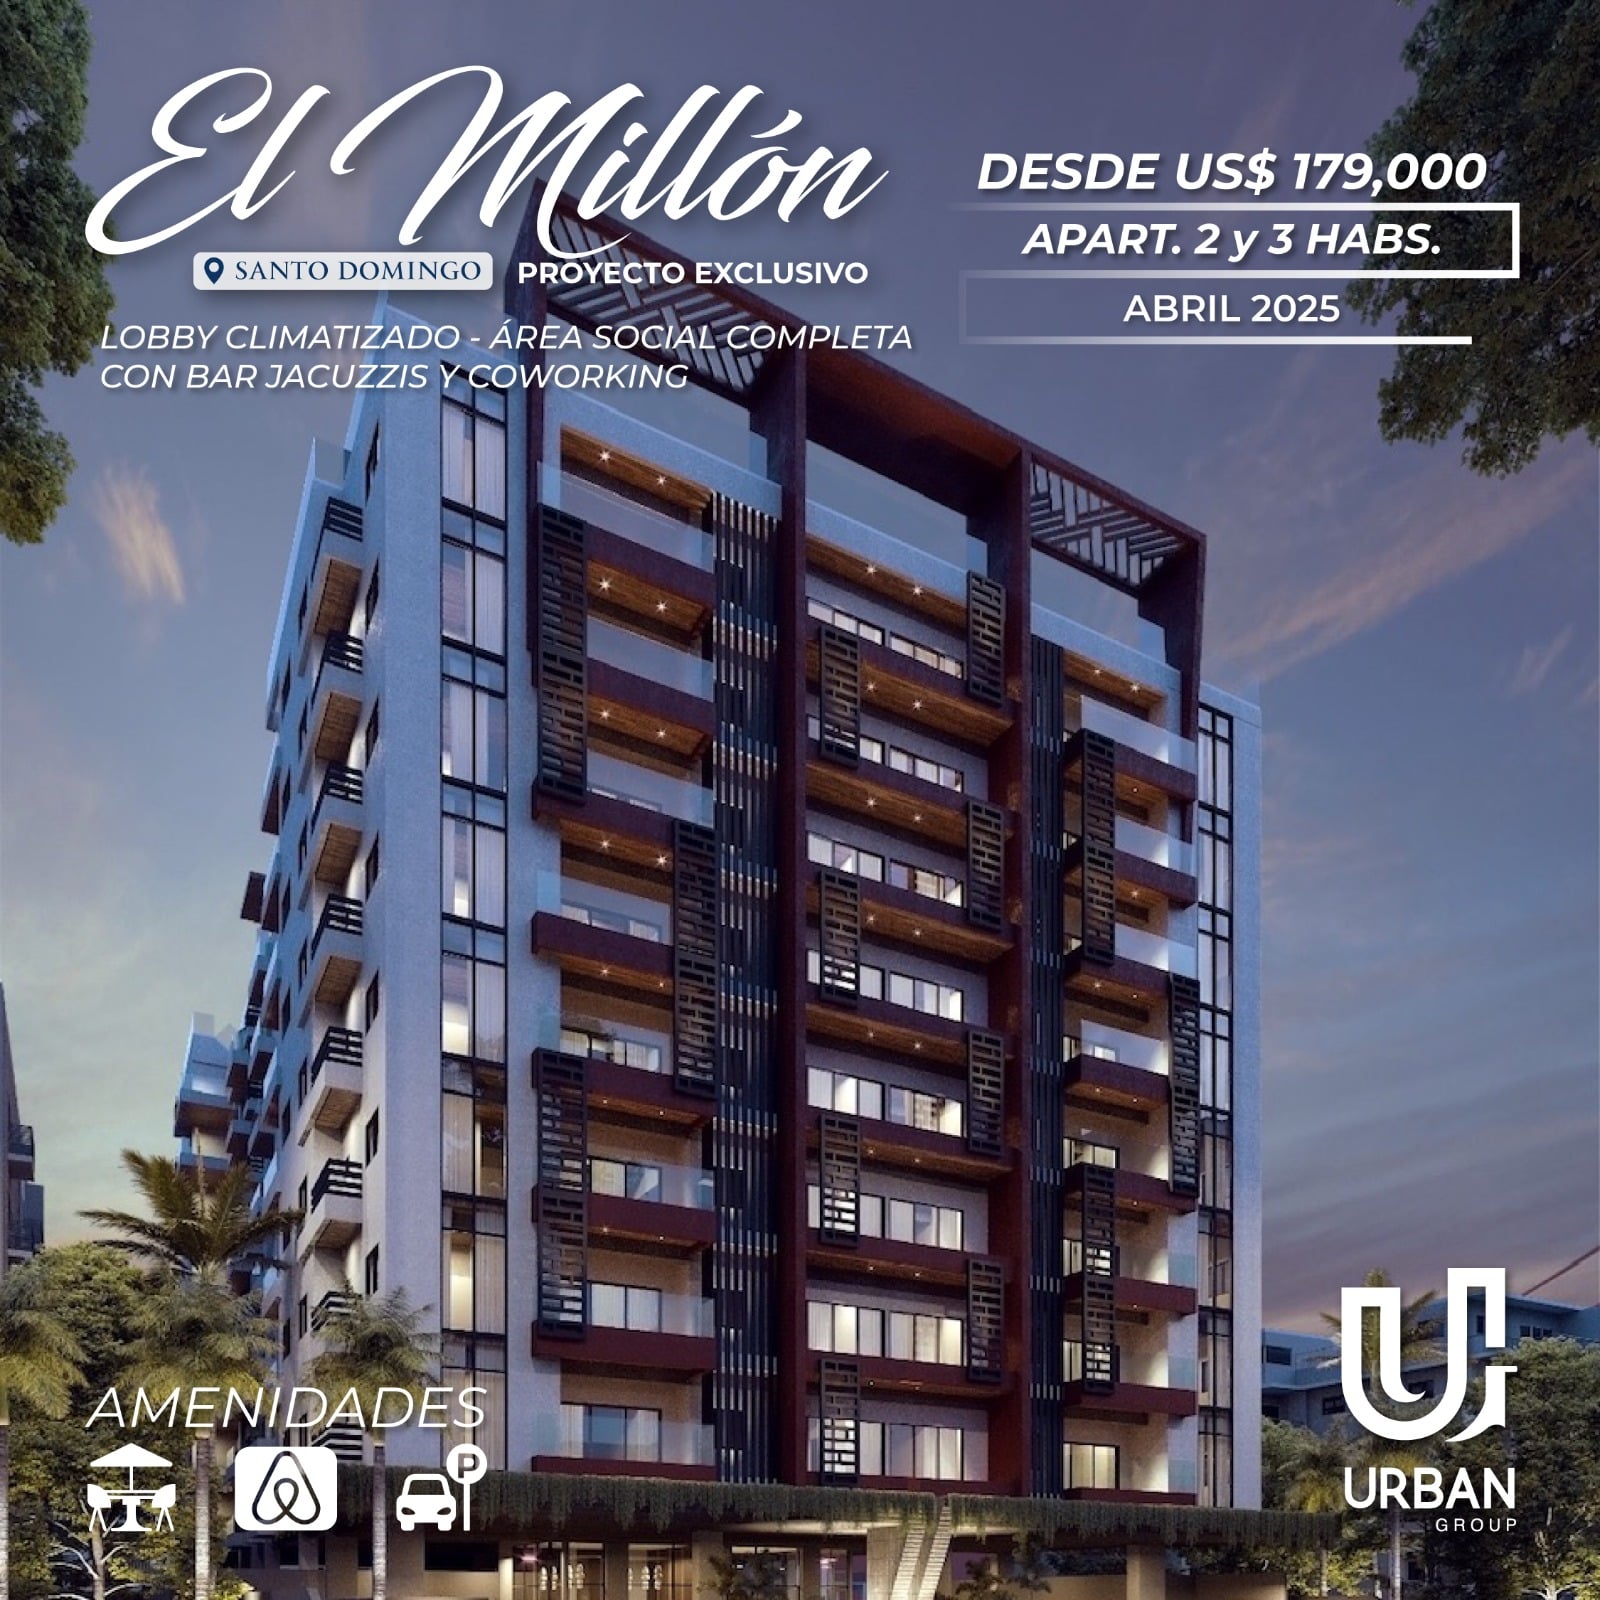 Apartamentos Residencial & Suites desde US$70,500 en el Millon